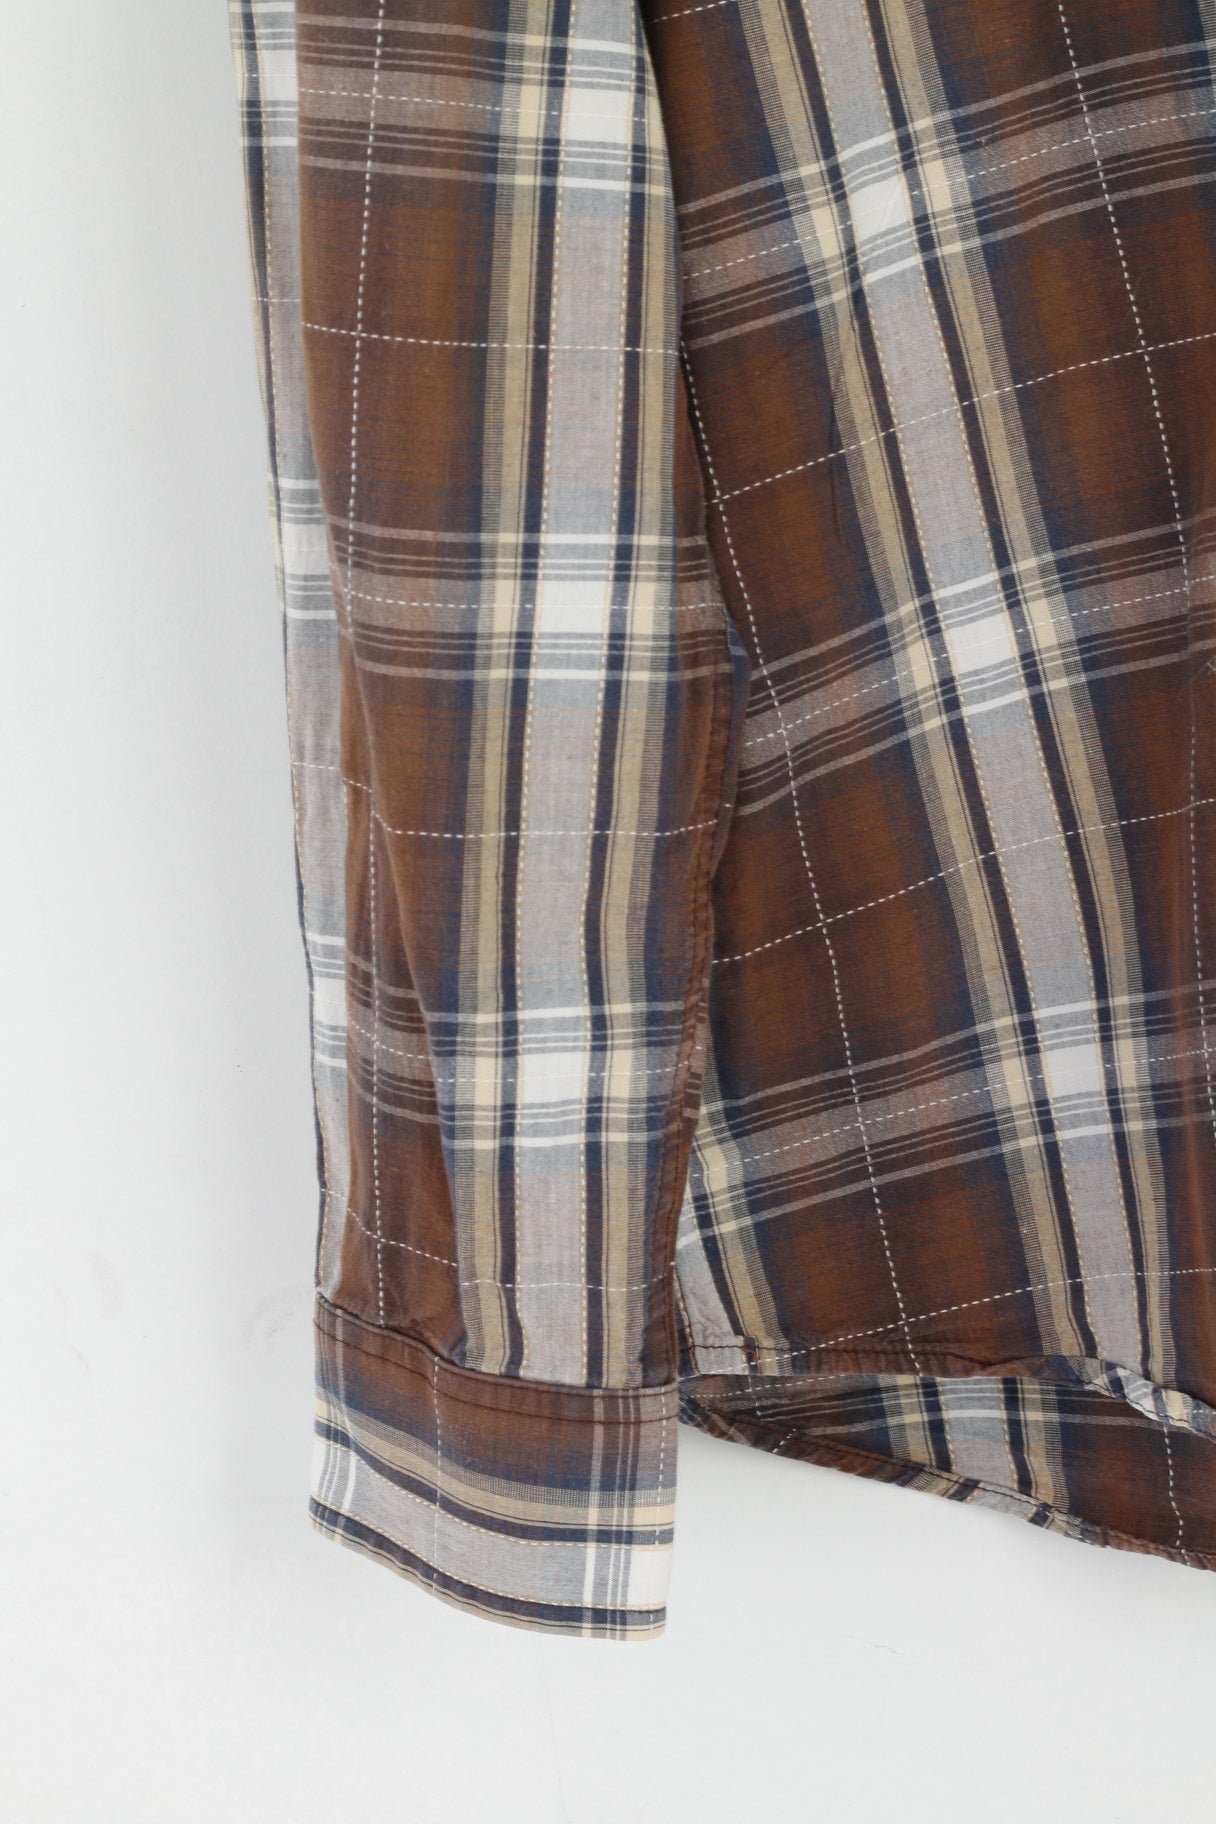 Camicia casual da uomo Wrangler M. Top country in cotone con vestibilità casual a quadri marrone